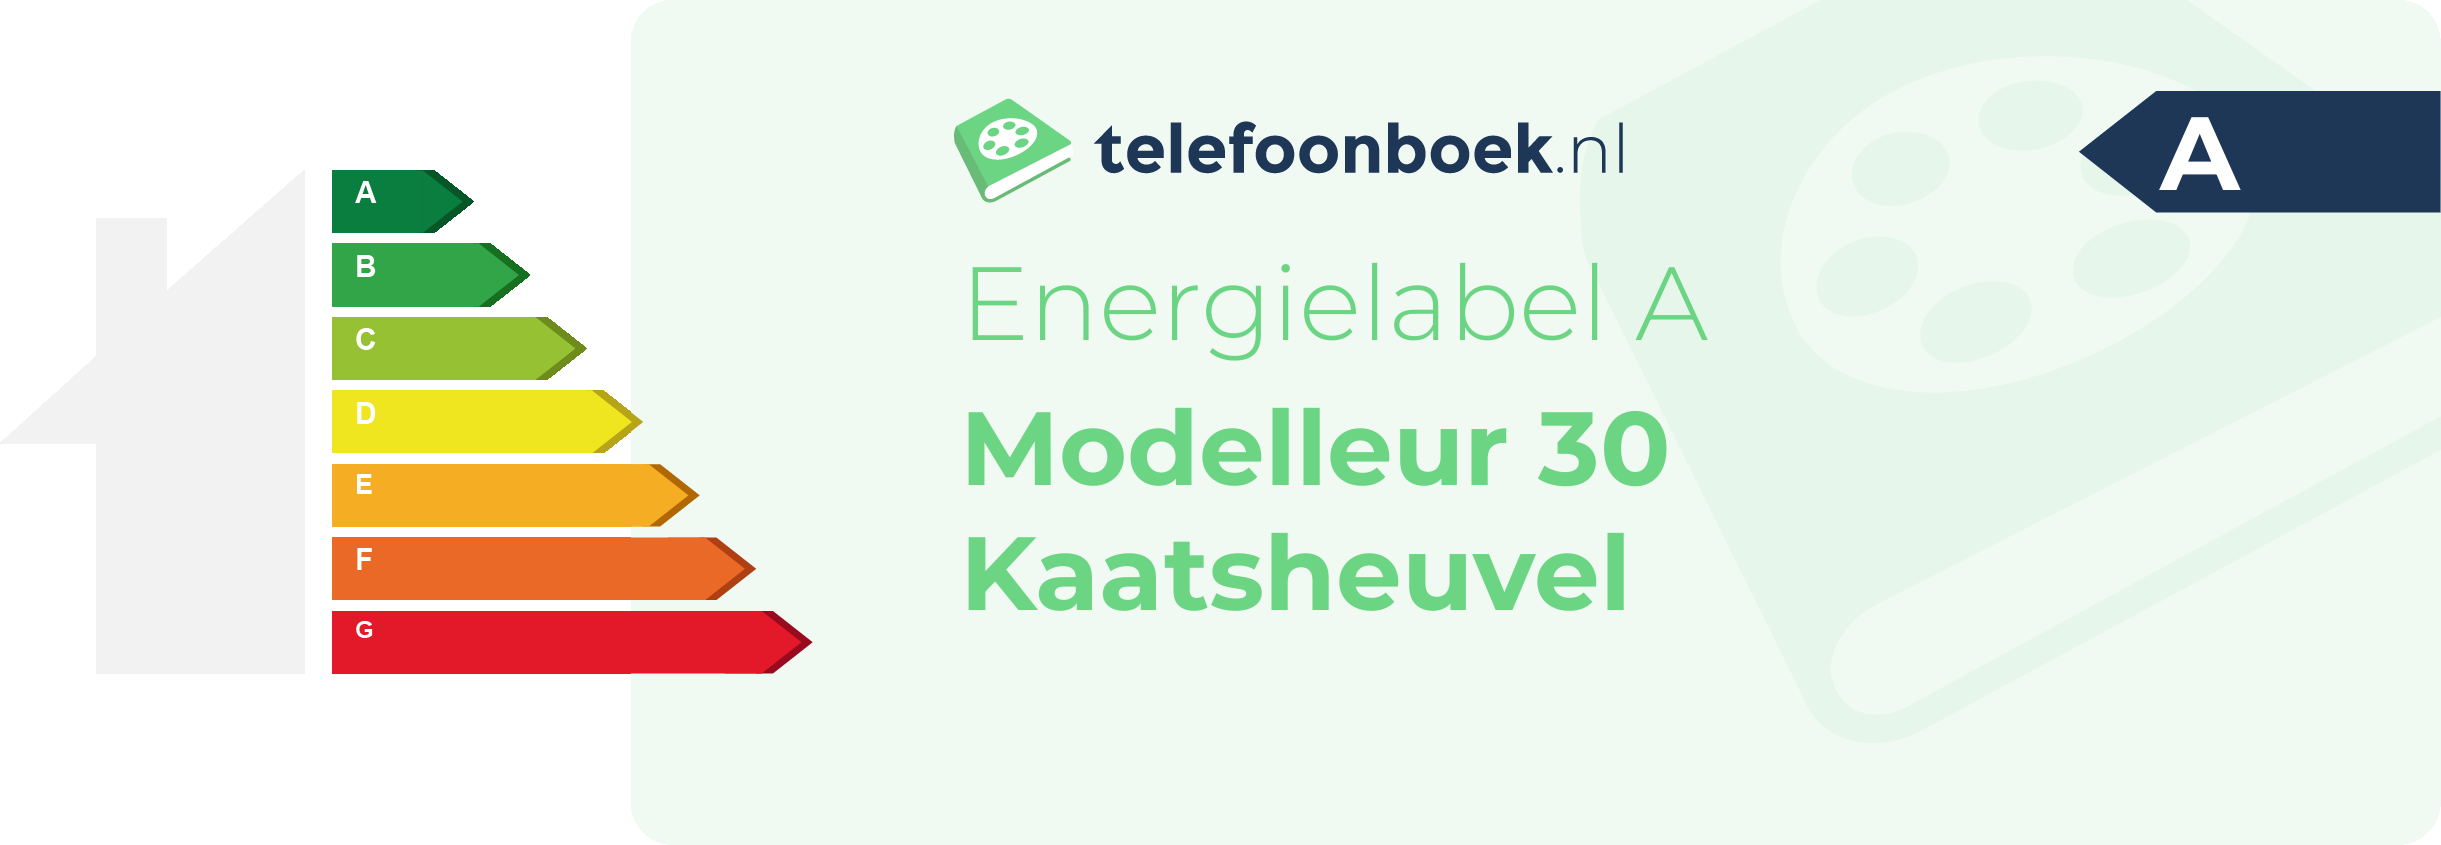 Energielabel Modelleur 30 Kaatsheuvel